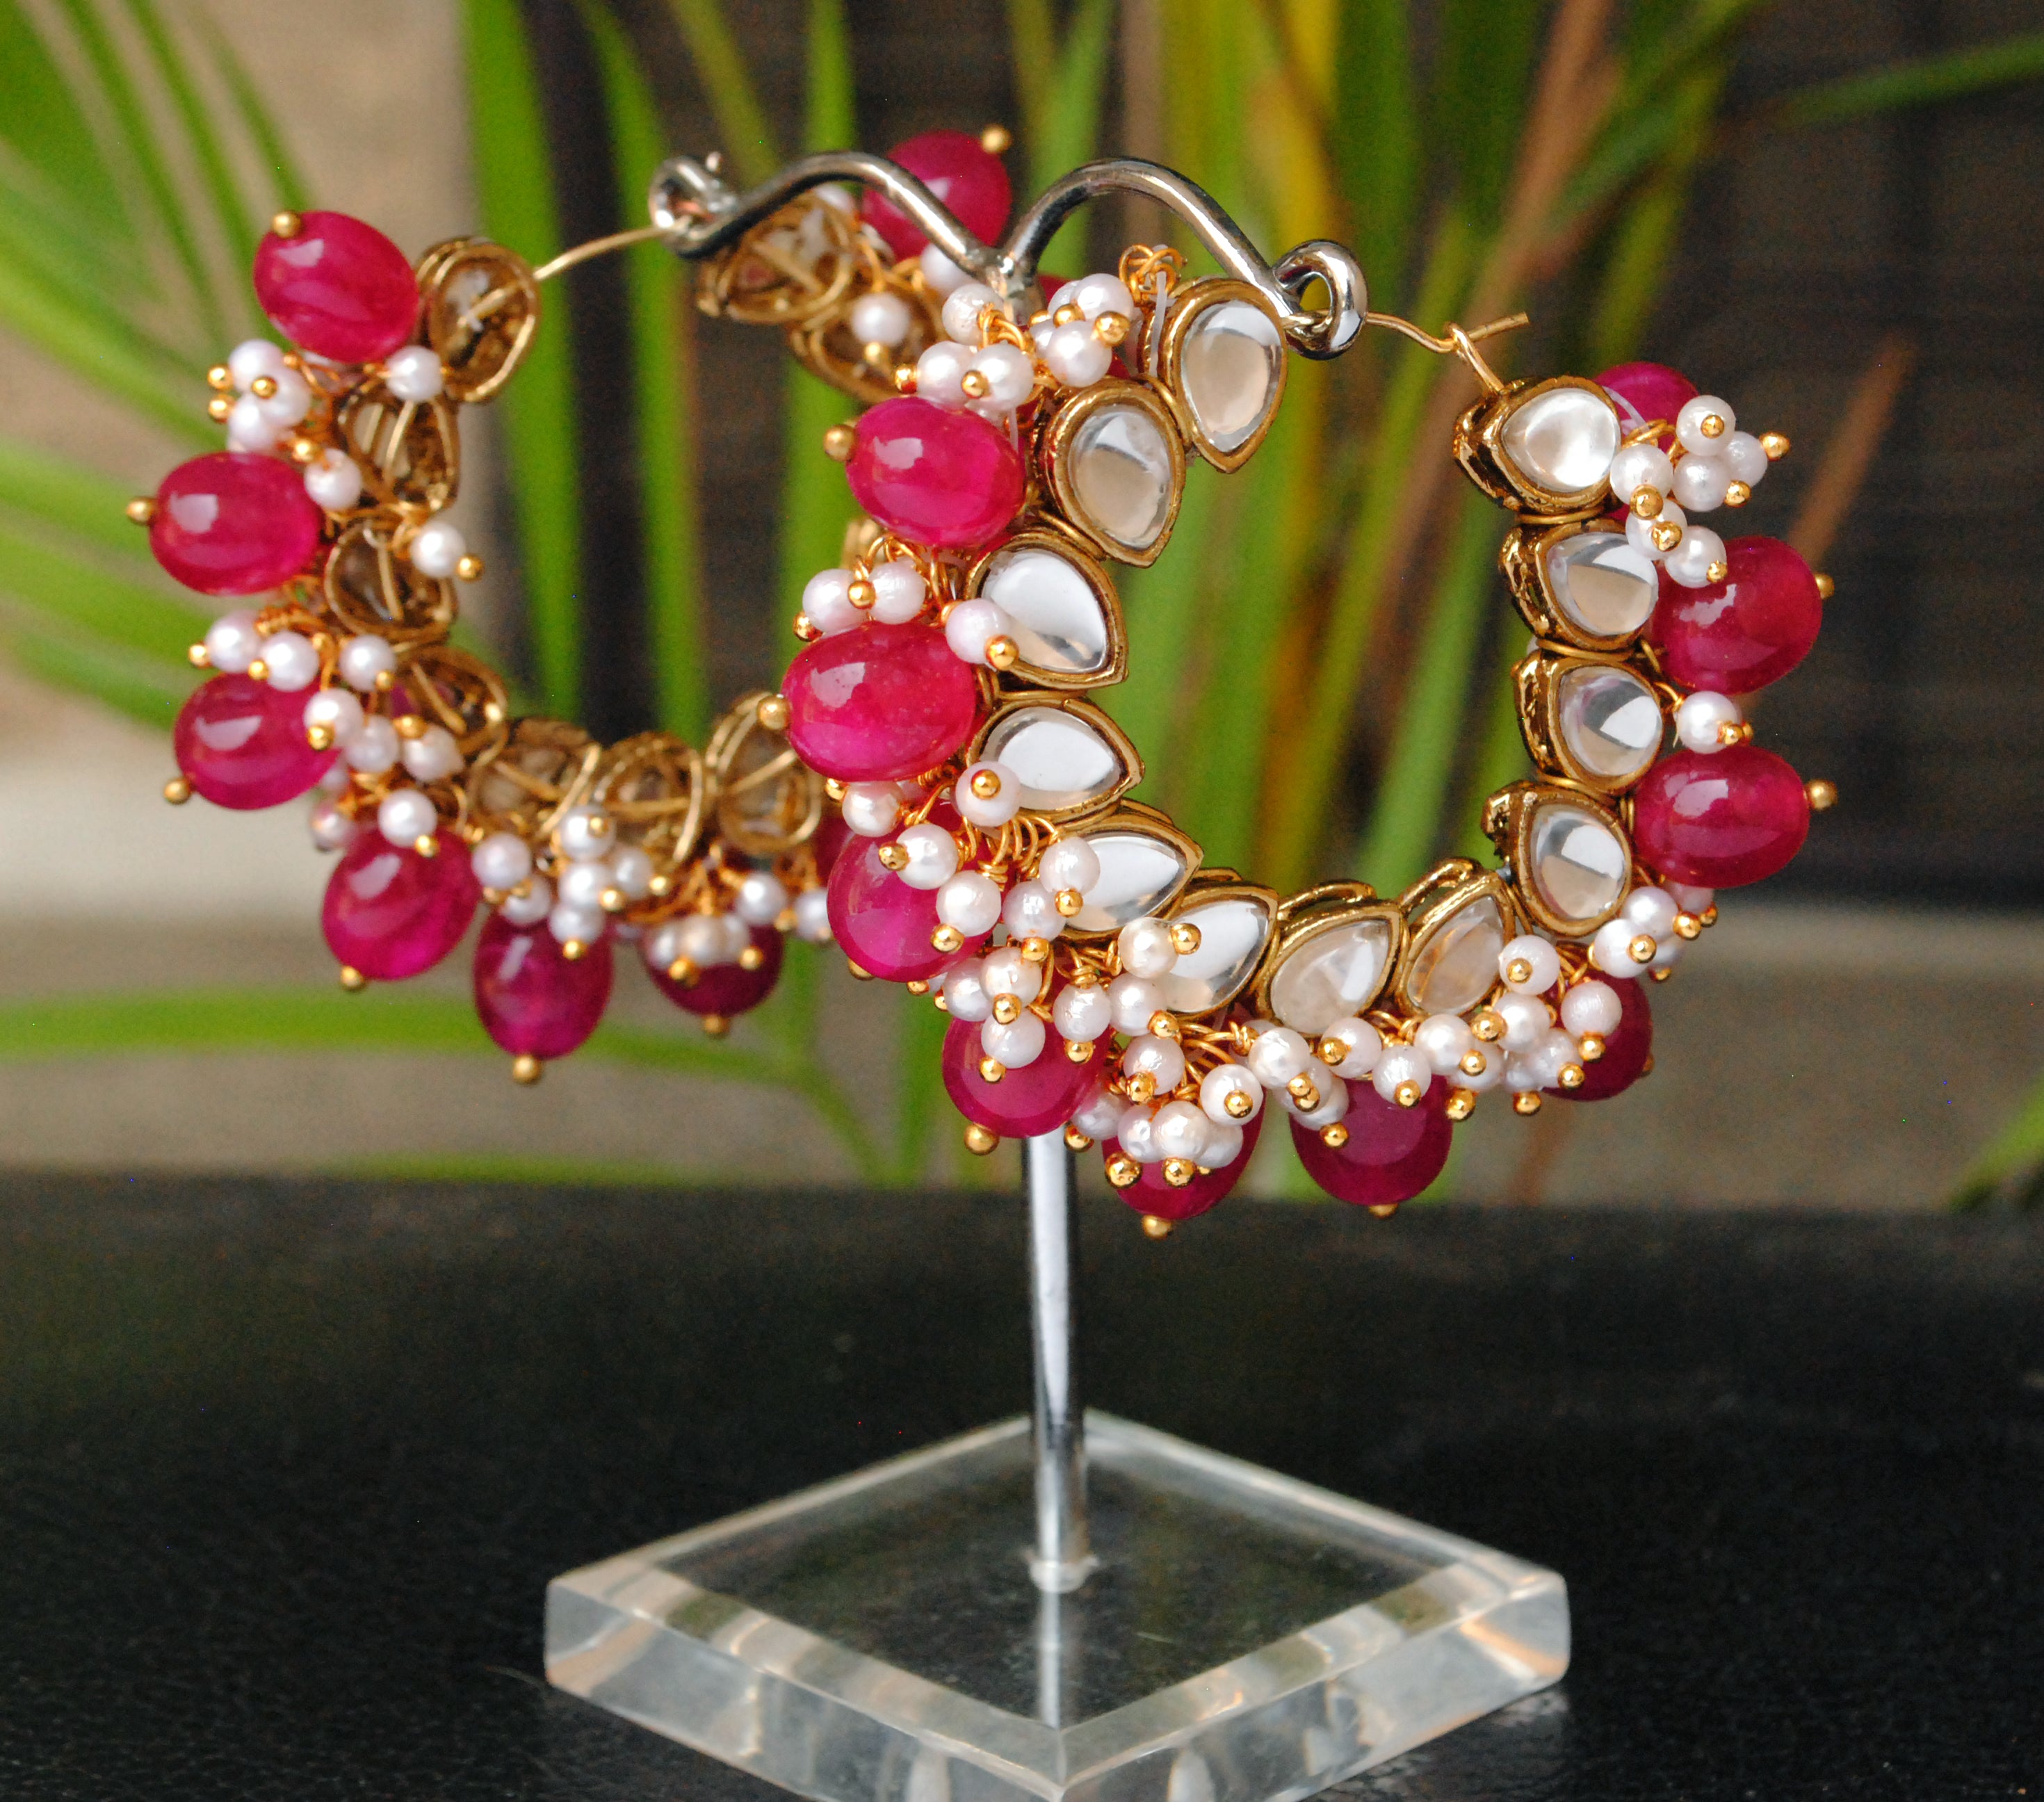 red beads hoops earrings